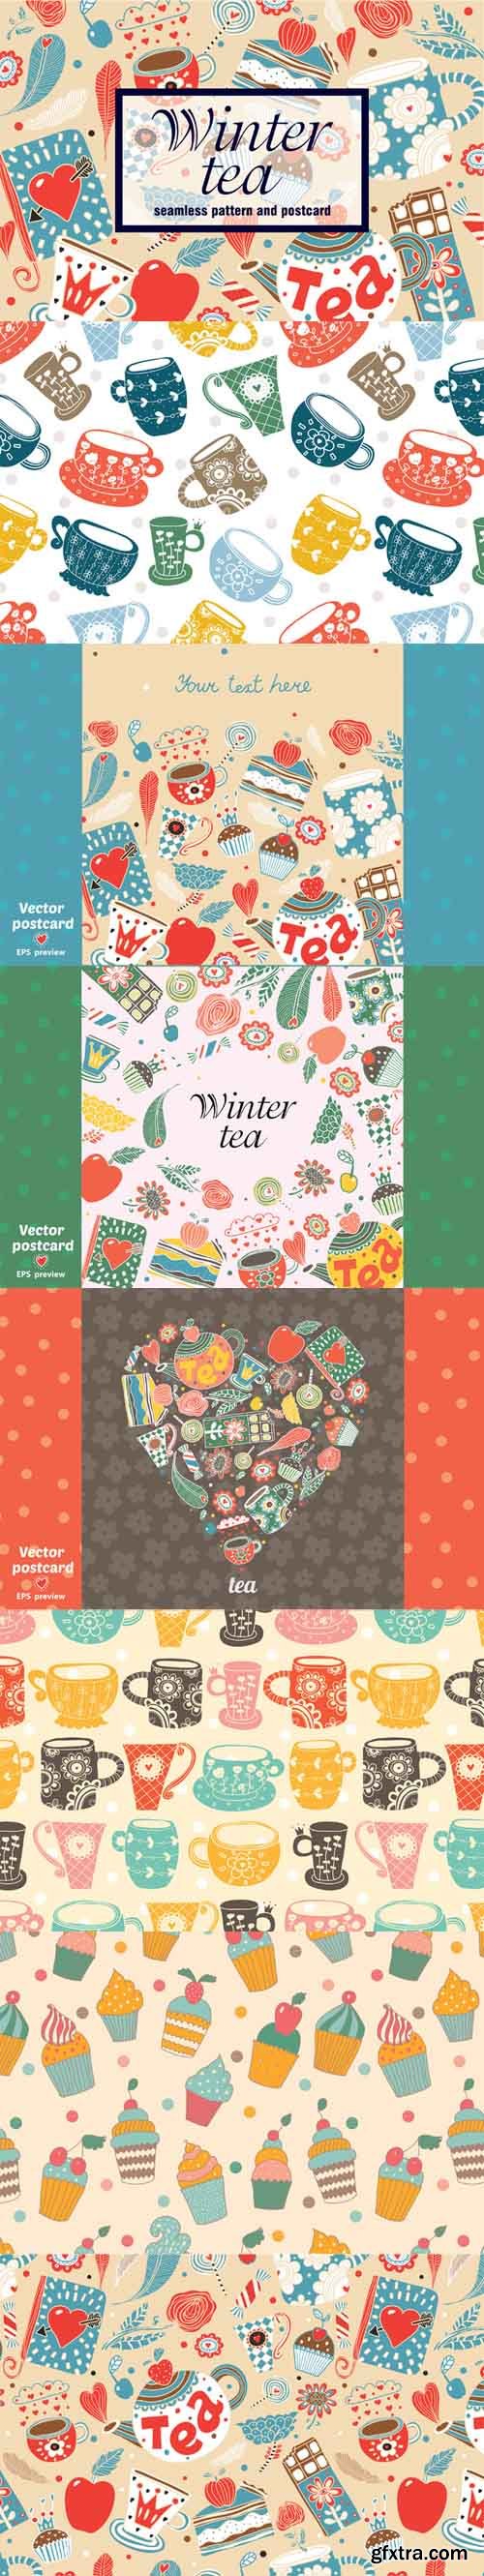 Winter tea time